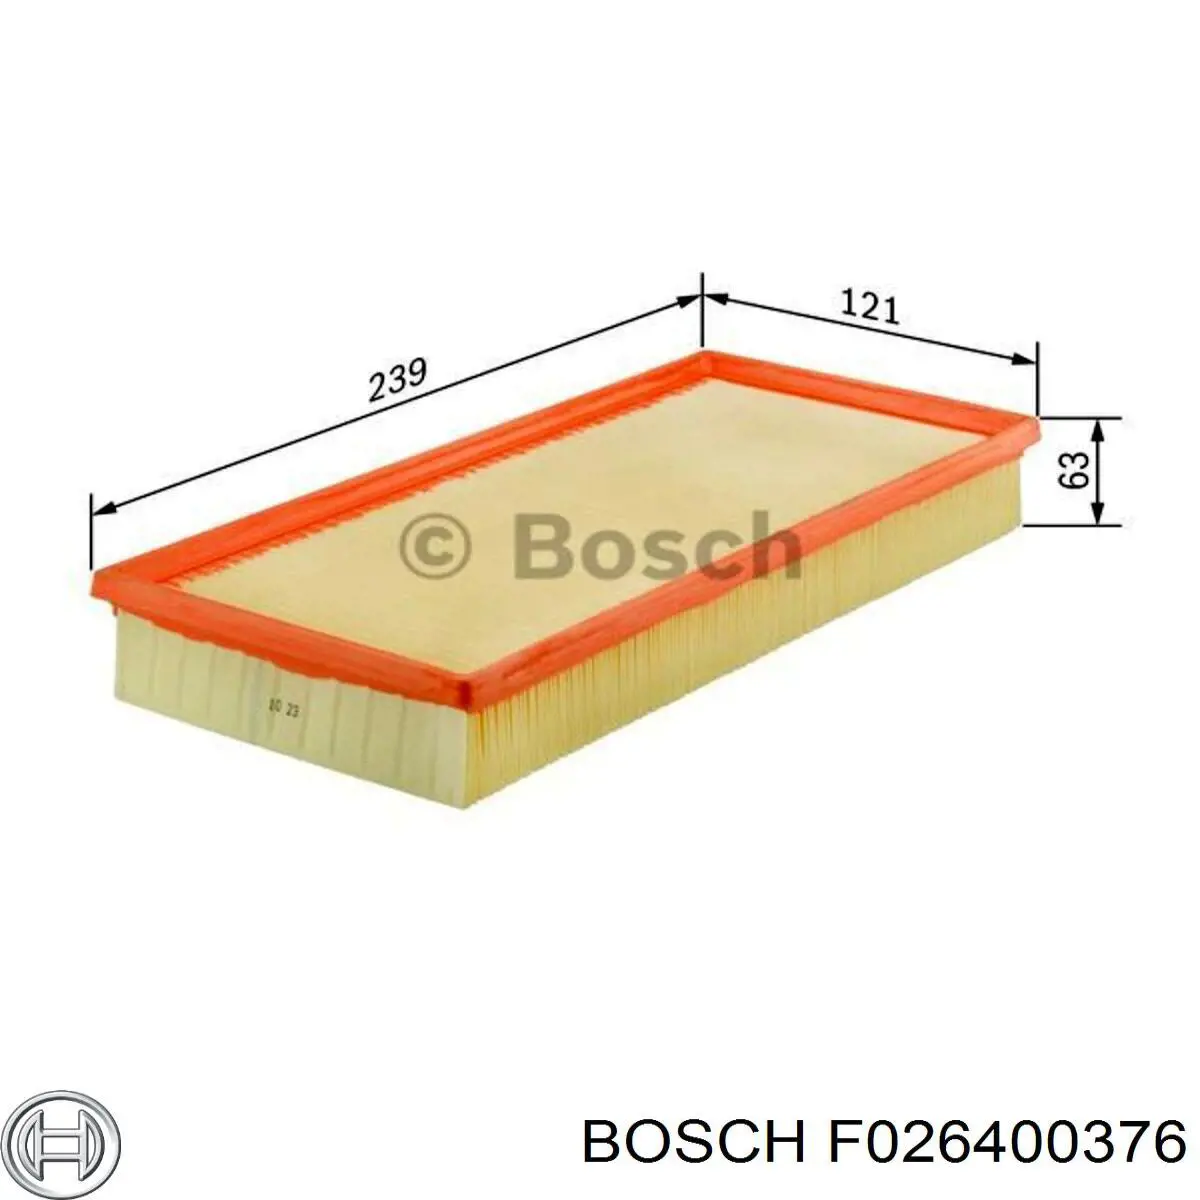 F026400376 Bosch filtro de aire